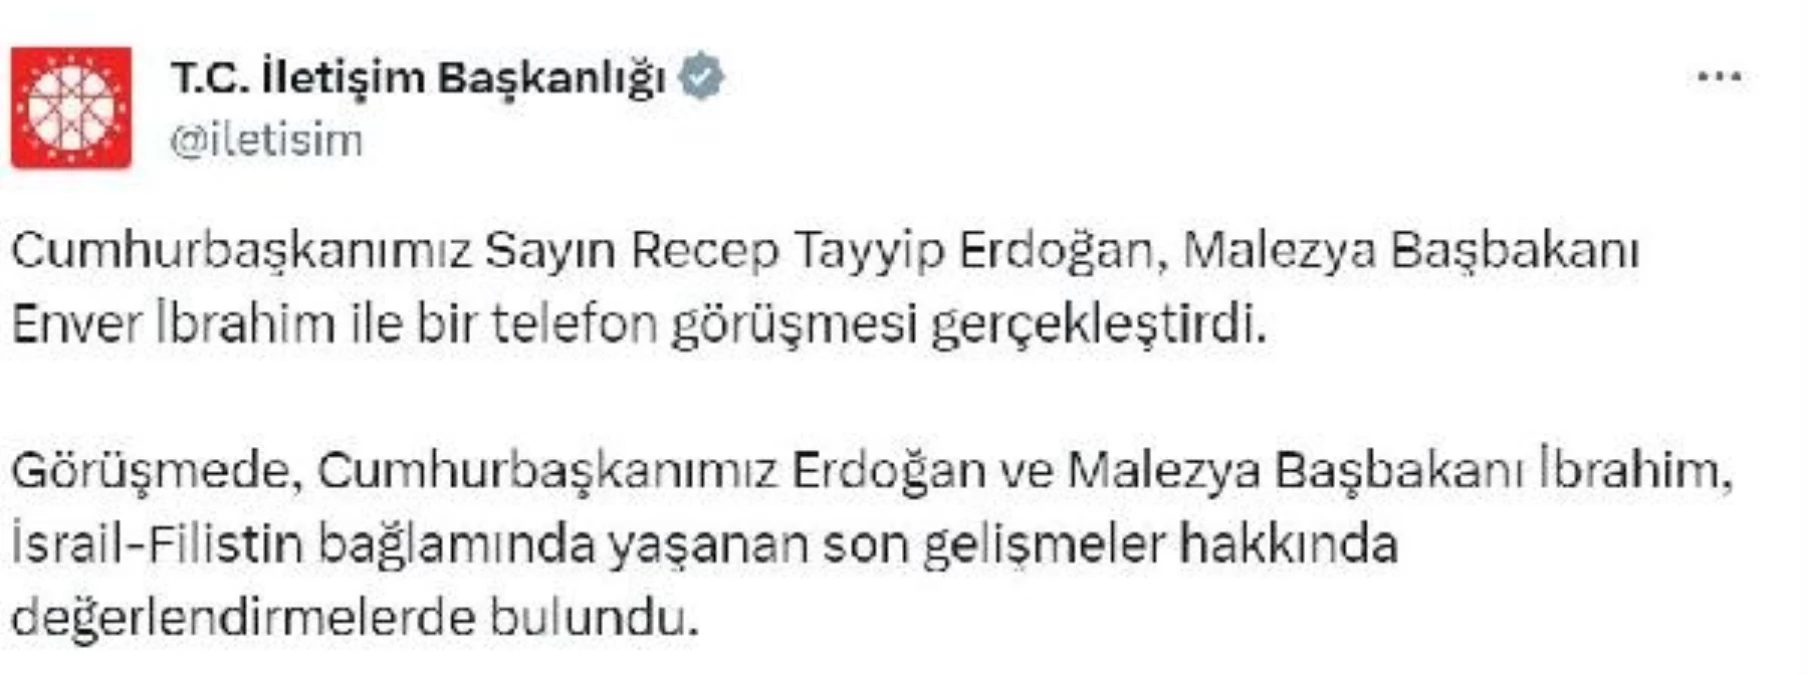 Cumhurbaşkanı Recep Tayyip Erdoğan, Malezya Başbakanı Enver İbrahim ile telefonda görüştü.